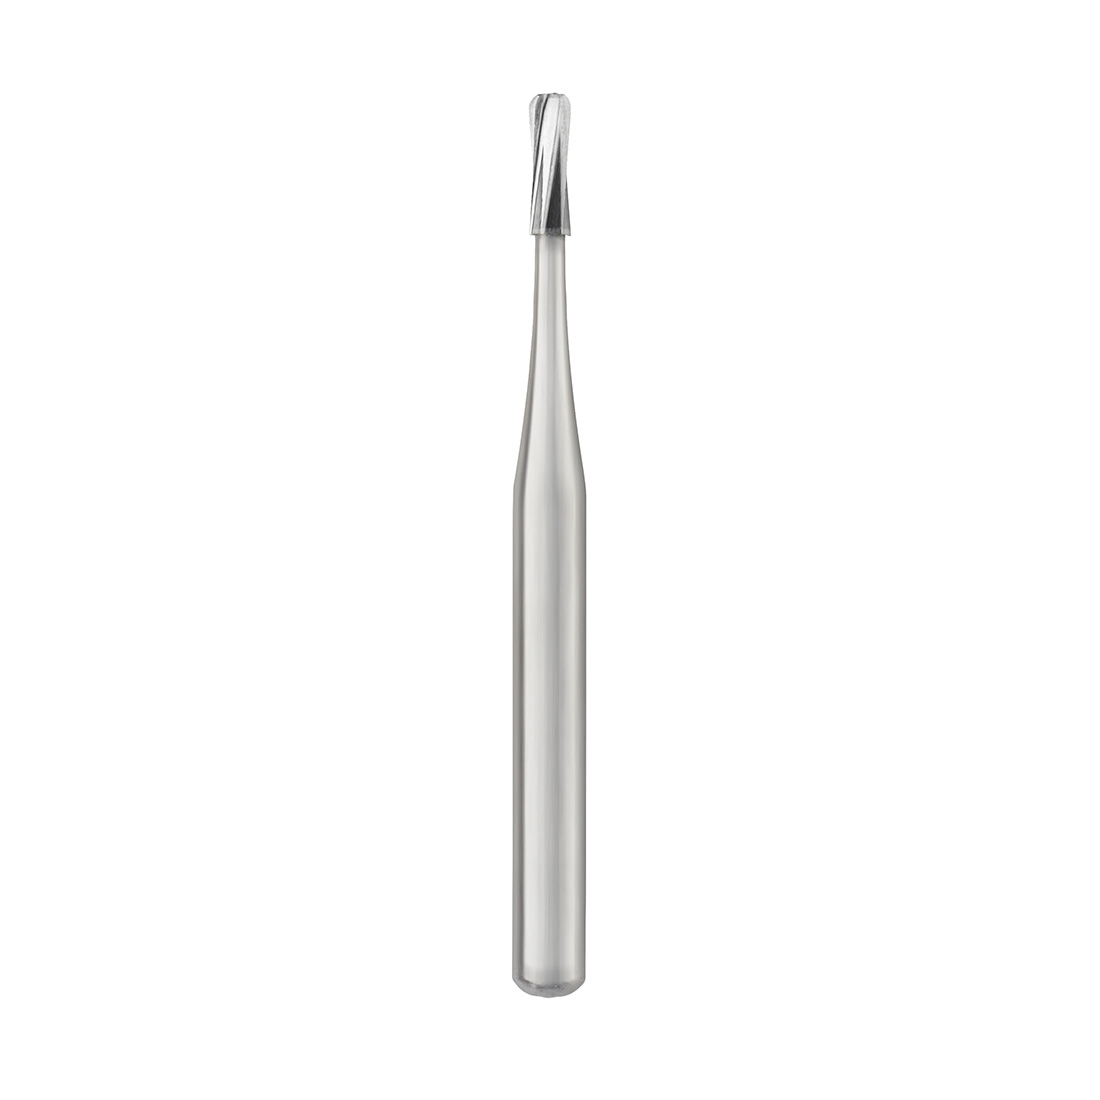 Carbide Bur, #245 Pear, Friction Grip (19mm), Bulk Packaging, Non-Sterile - 100/Box